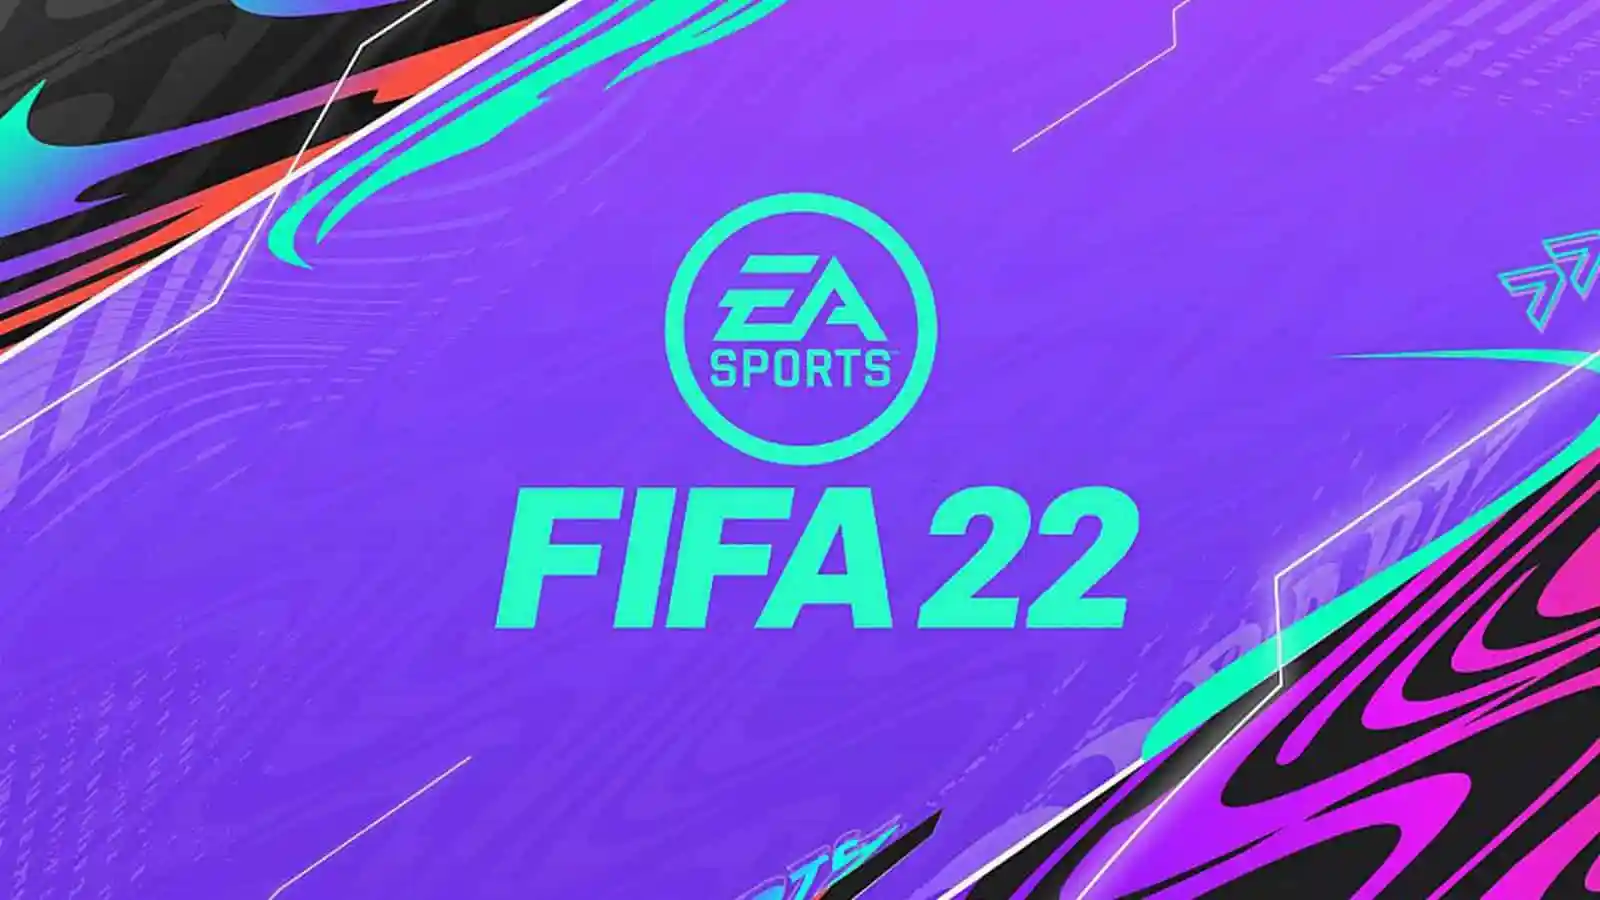 ไม่รอด! ผู้ผลิตแพลตฟอร์ม FIFA22 ลบทีมรัสเซียทั้งหมด